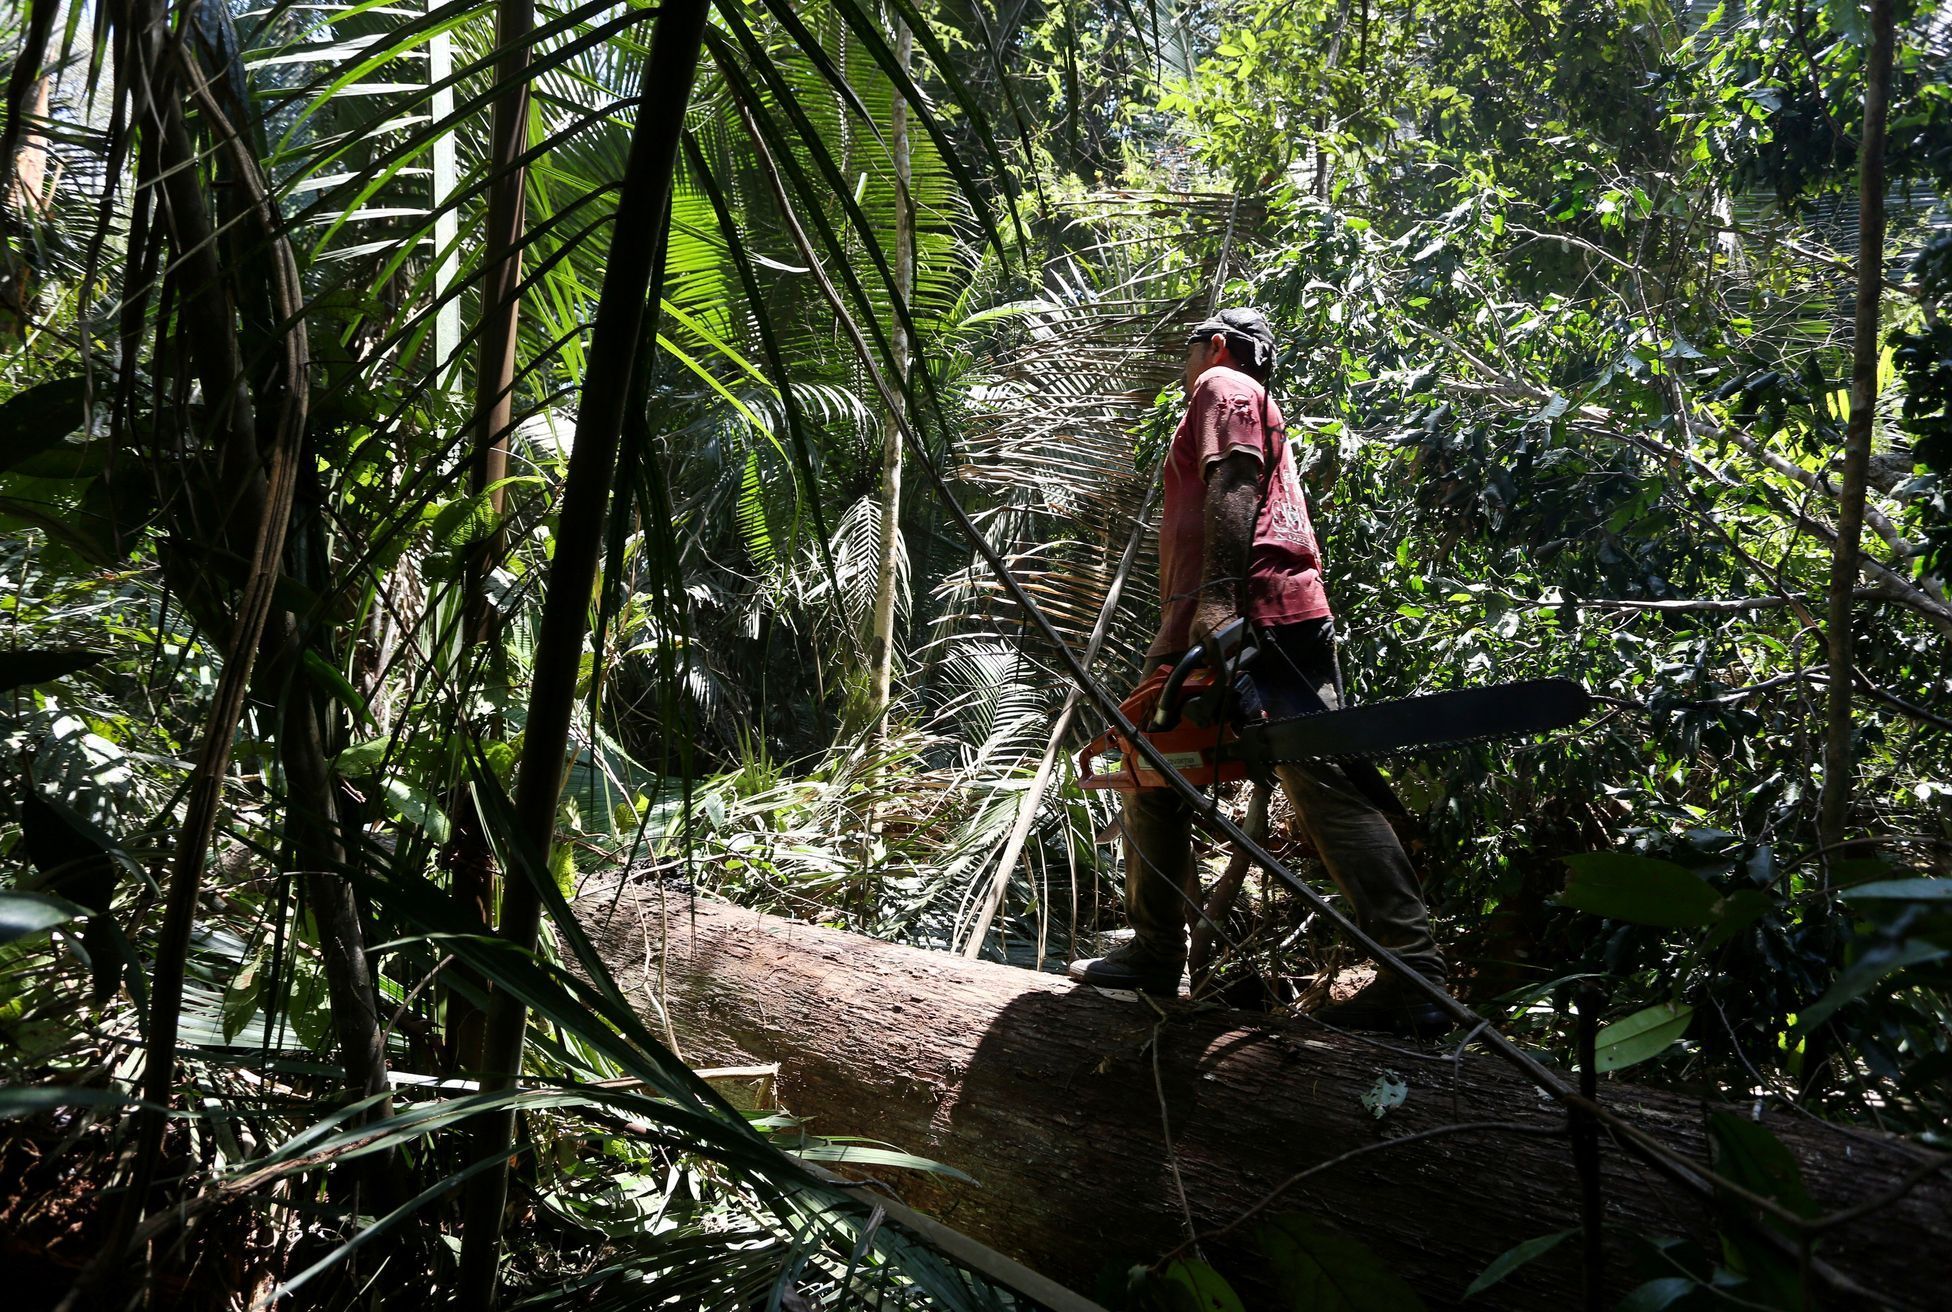 Dálnice BR-319 vede amazonským pralesem. Kolem ní se kácí a ničí džungle.